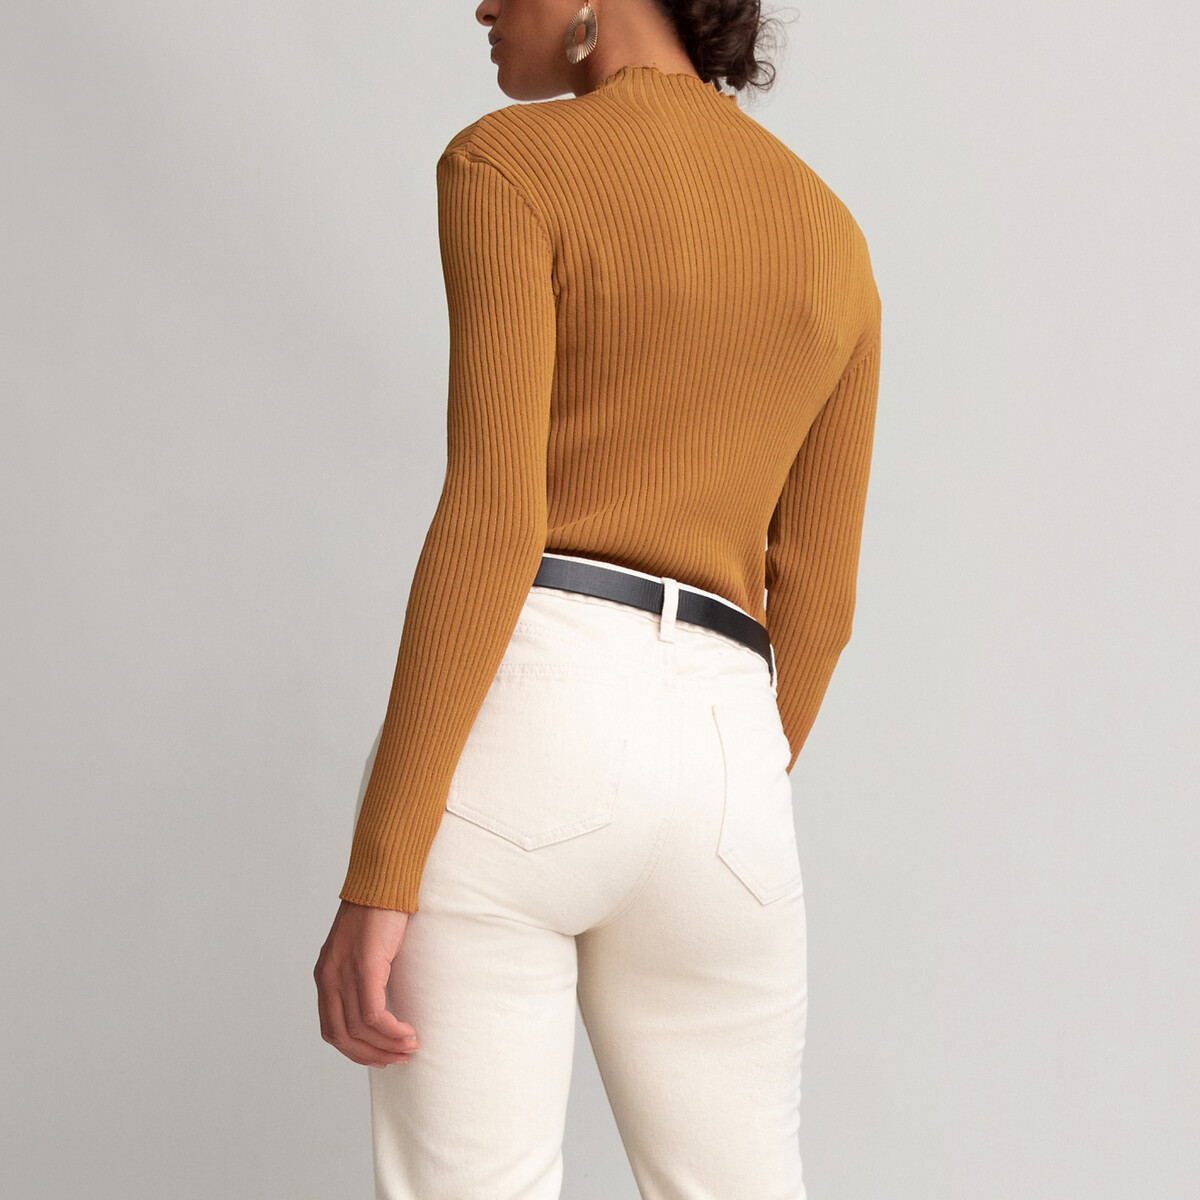 Пуловер La Redoute С воротником-стойкой из трикотажа в рубчик XL каштановый, размер XL - фото 4